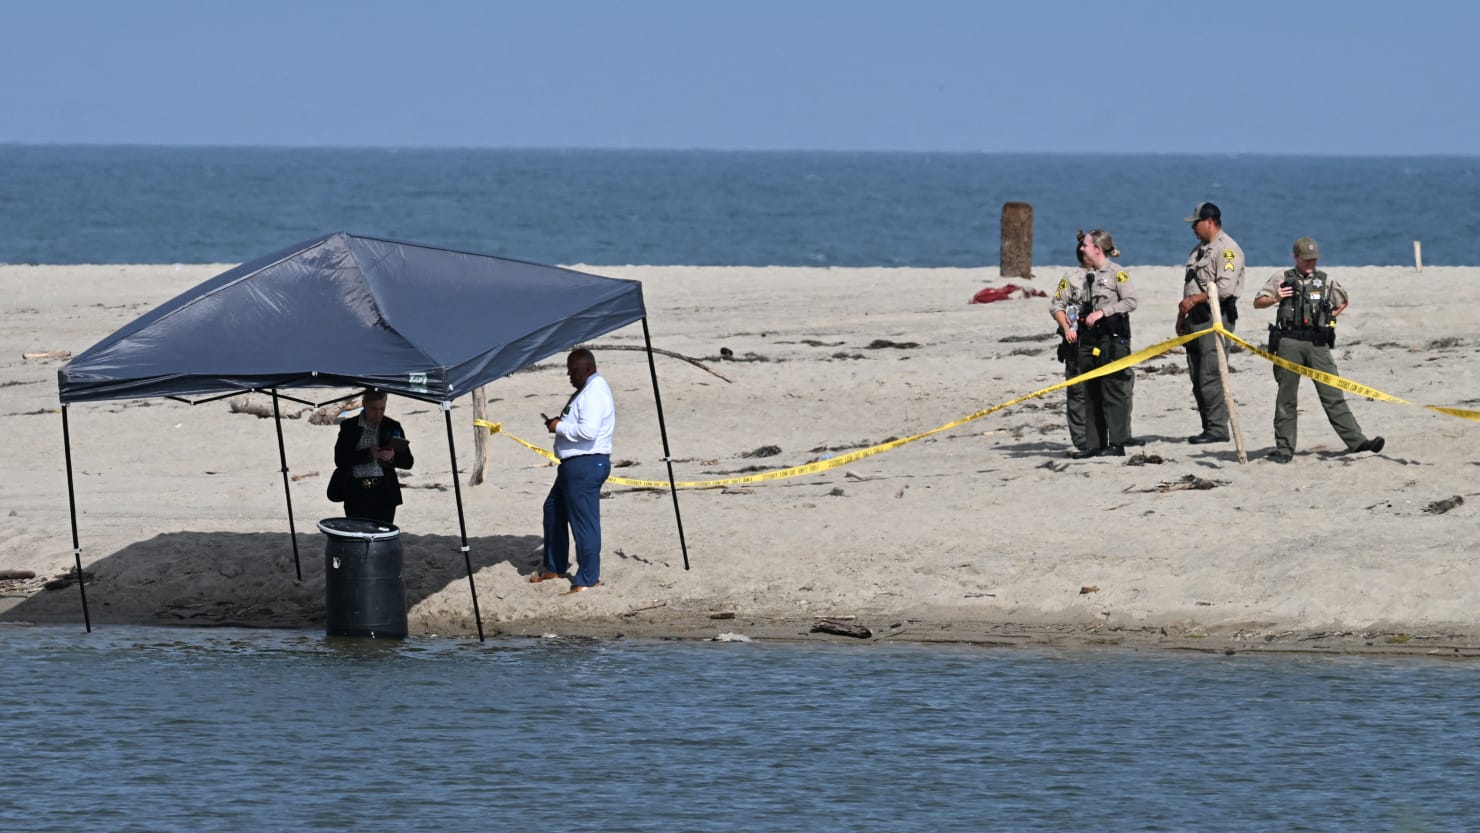 Naked Body Found Stuffed Inside Barrel by Malibu Lifeguard Identified photo